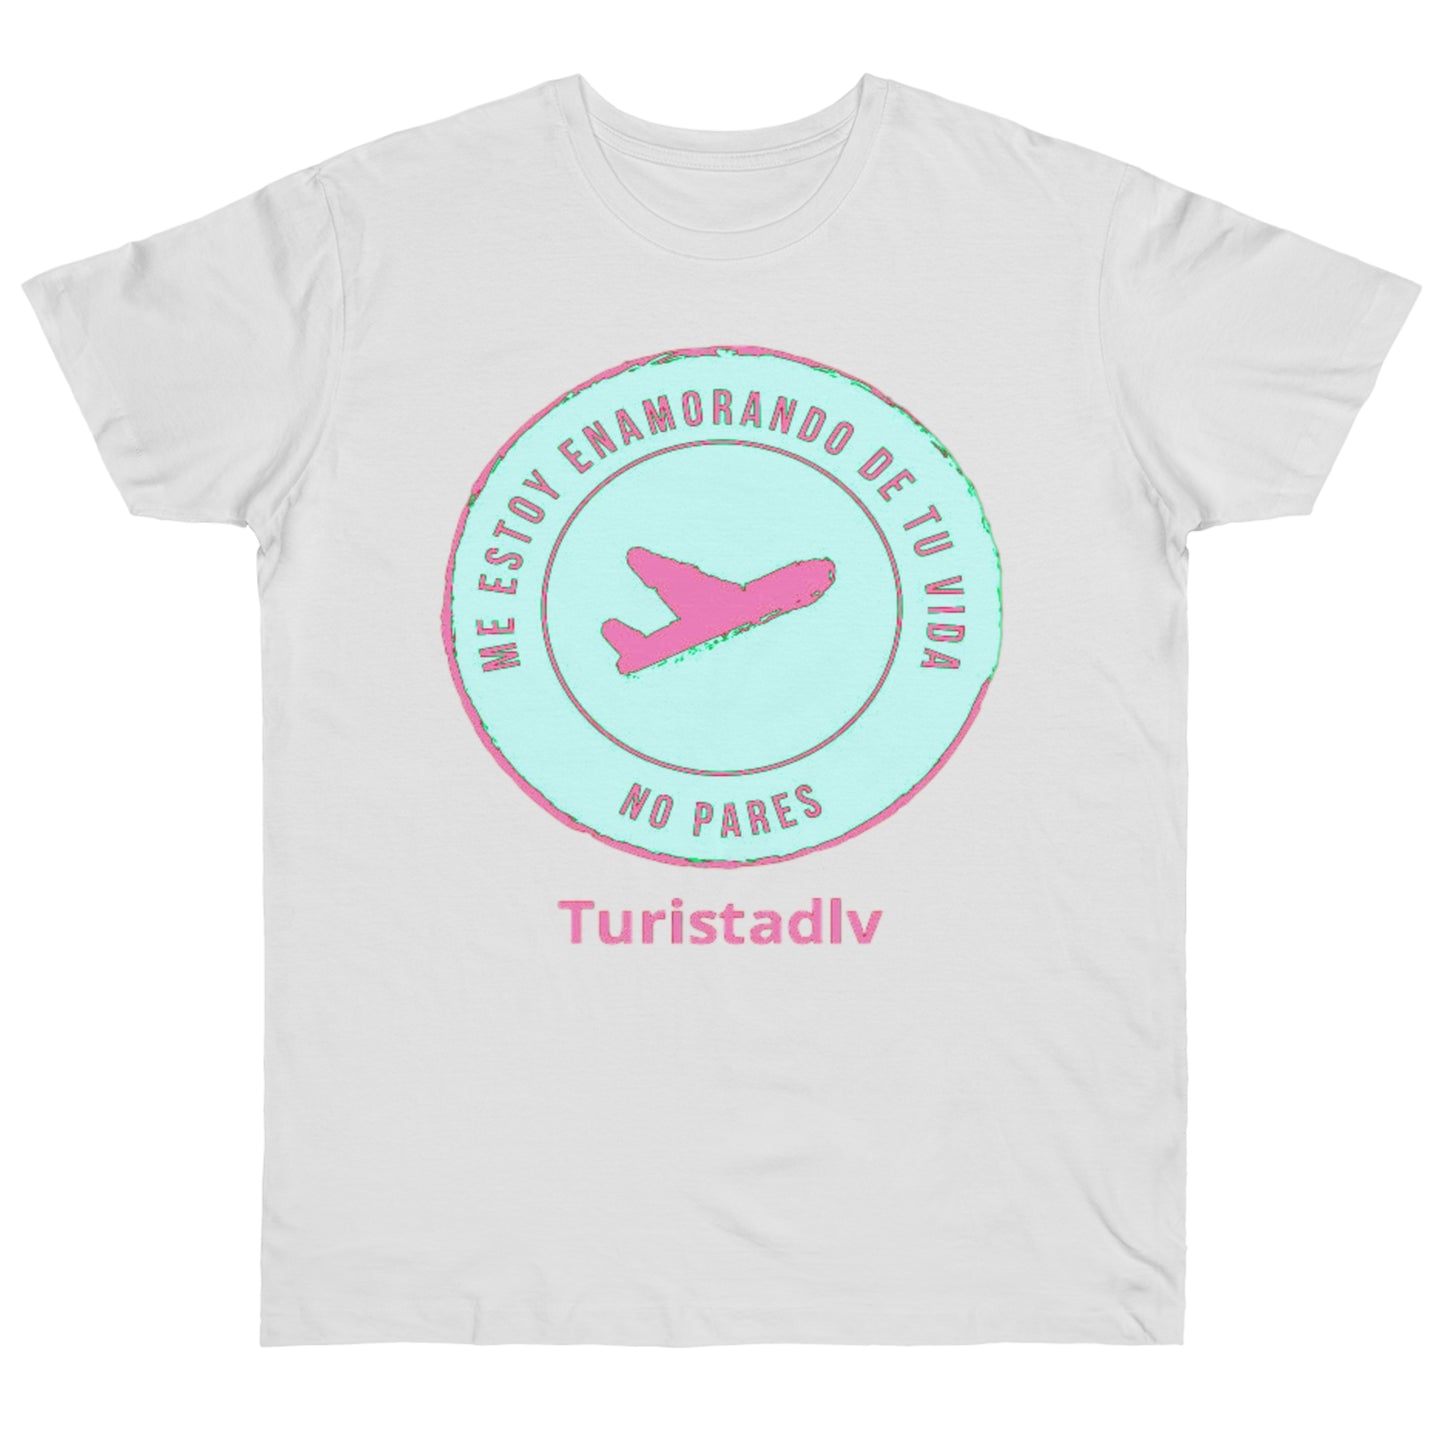 Camiseta de avión, camiseta de piloto, camisa de viajero, camiseta inspiradora, camiseta de viajero, regalo viajero, aviación, camisa viaje